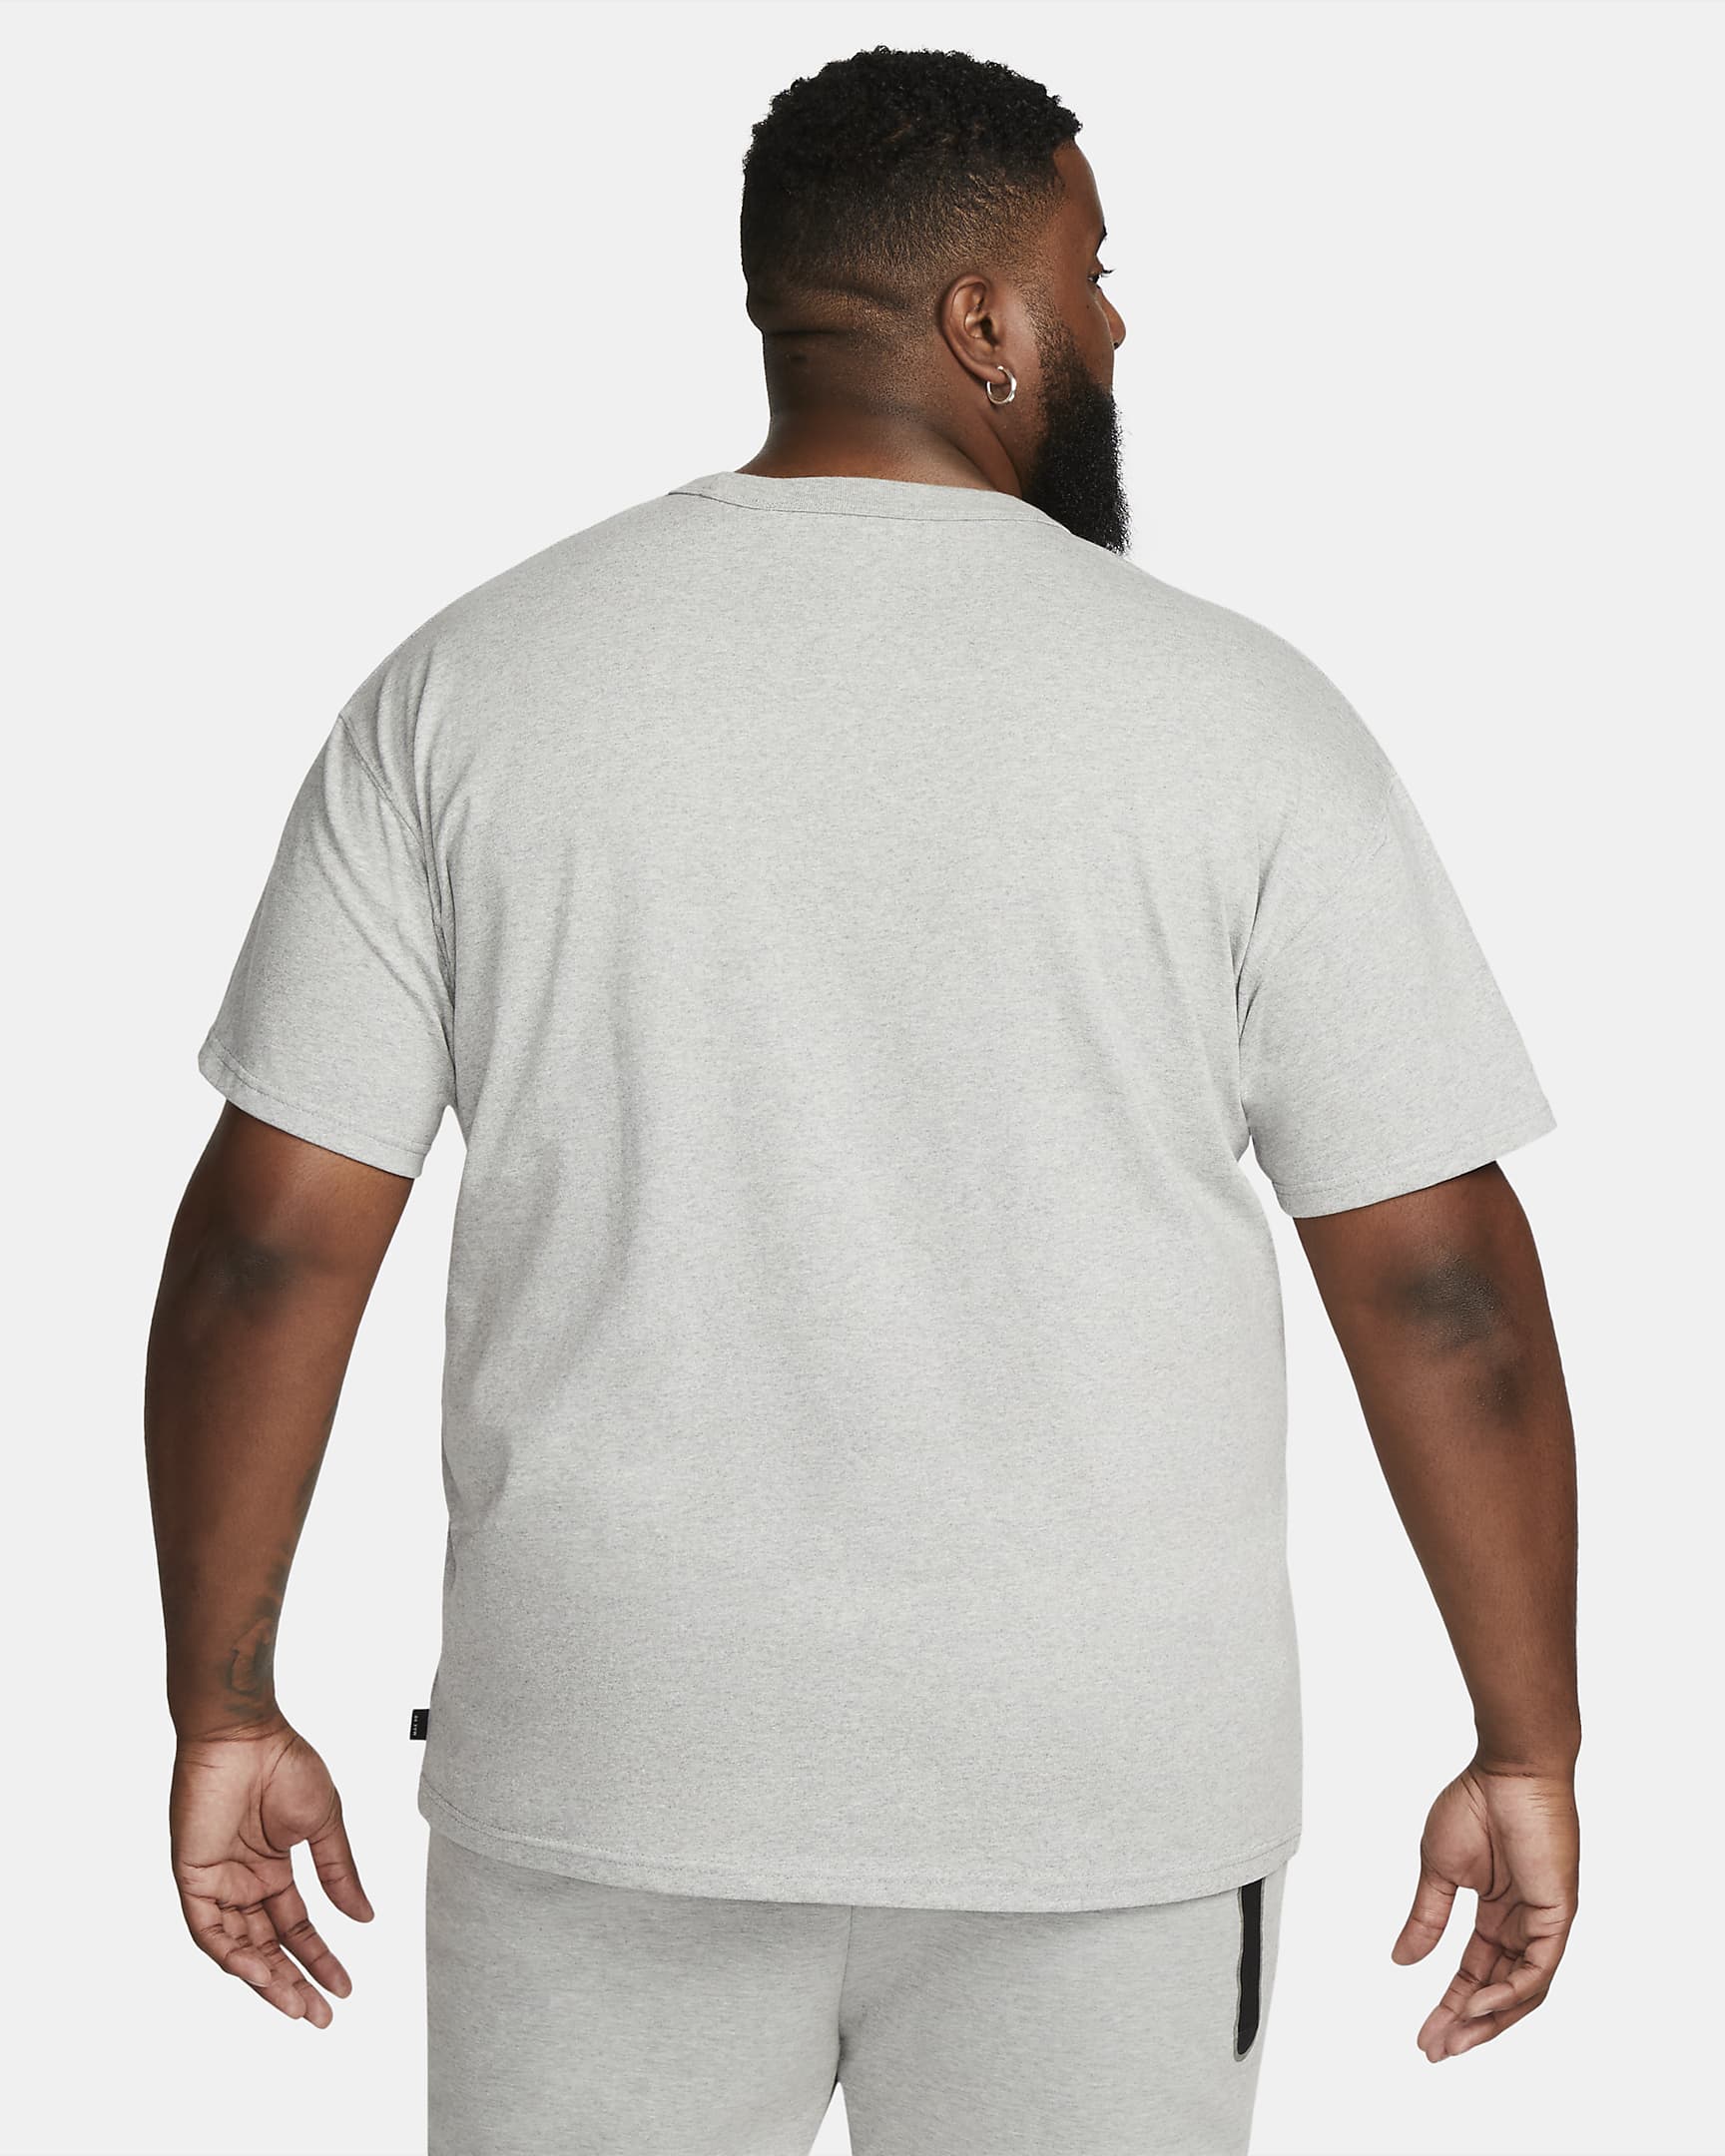 Nike Sportswear Premium Essentials Men's T-Shirt - Dark Grey Heather